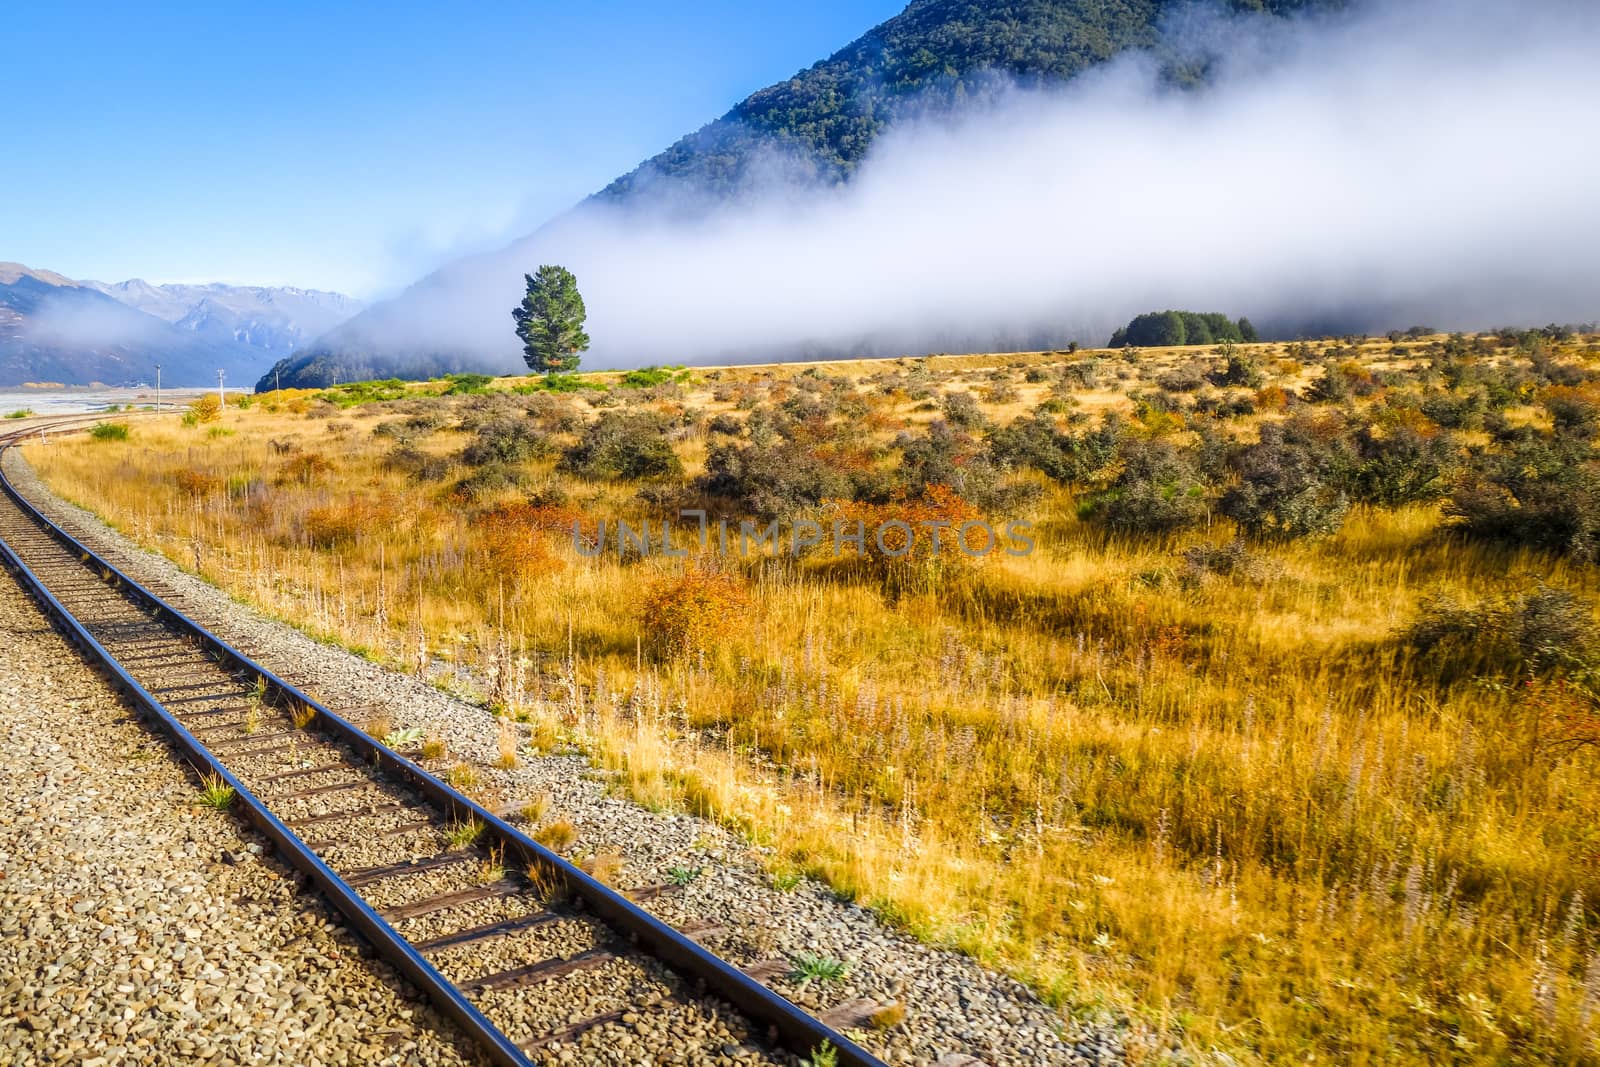 Railway in Mountain fields landscape, New Zealand alps